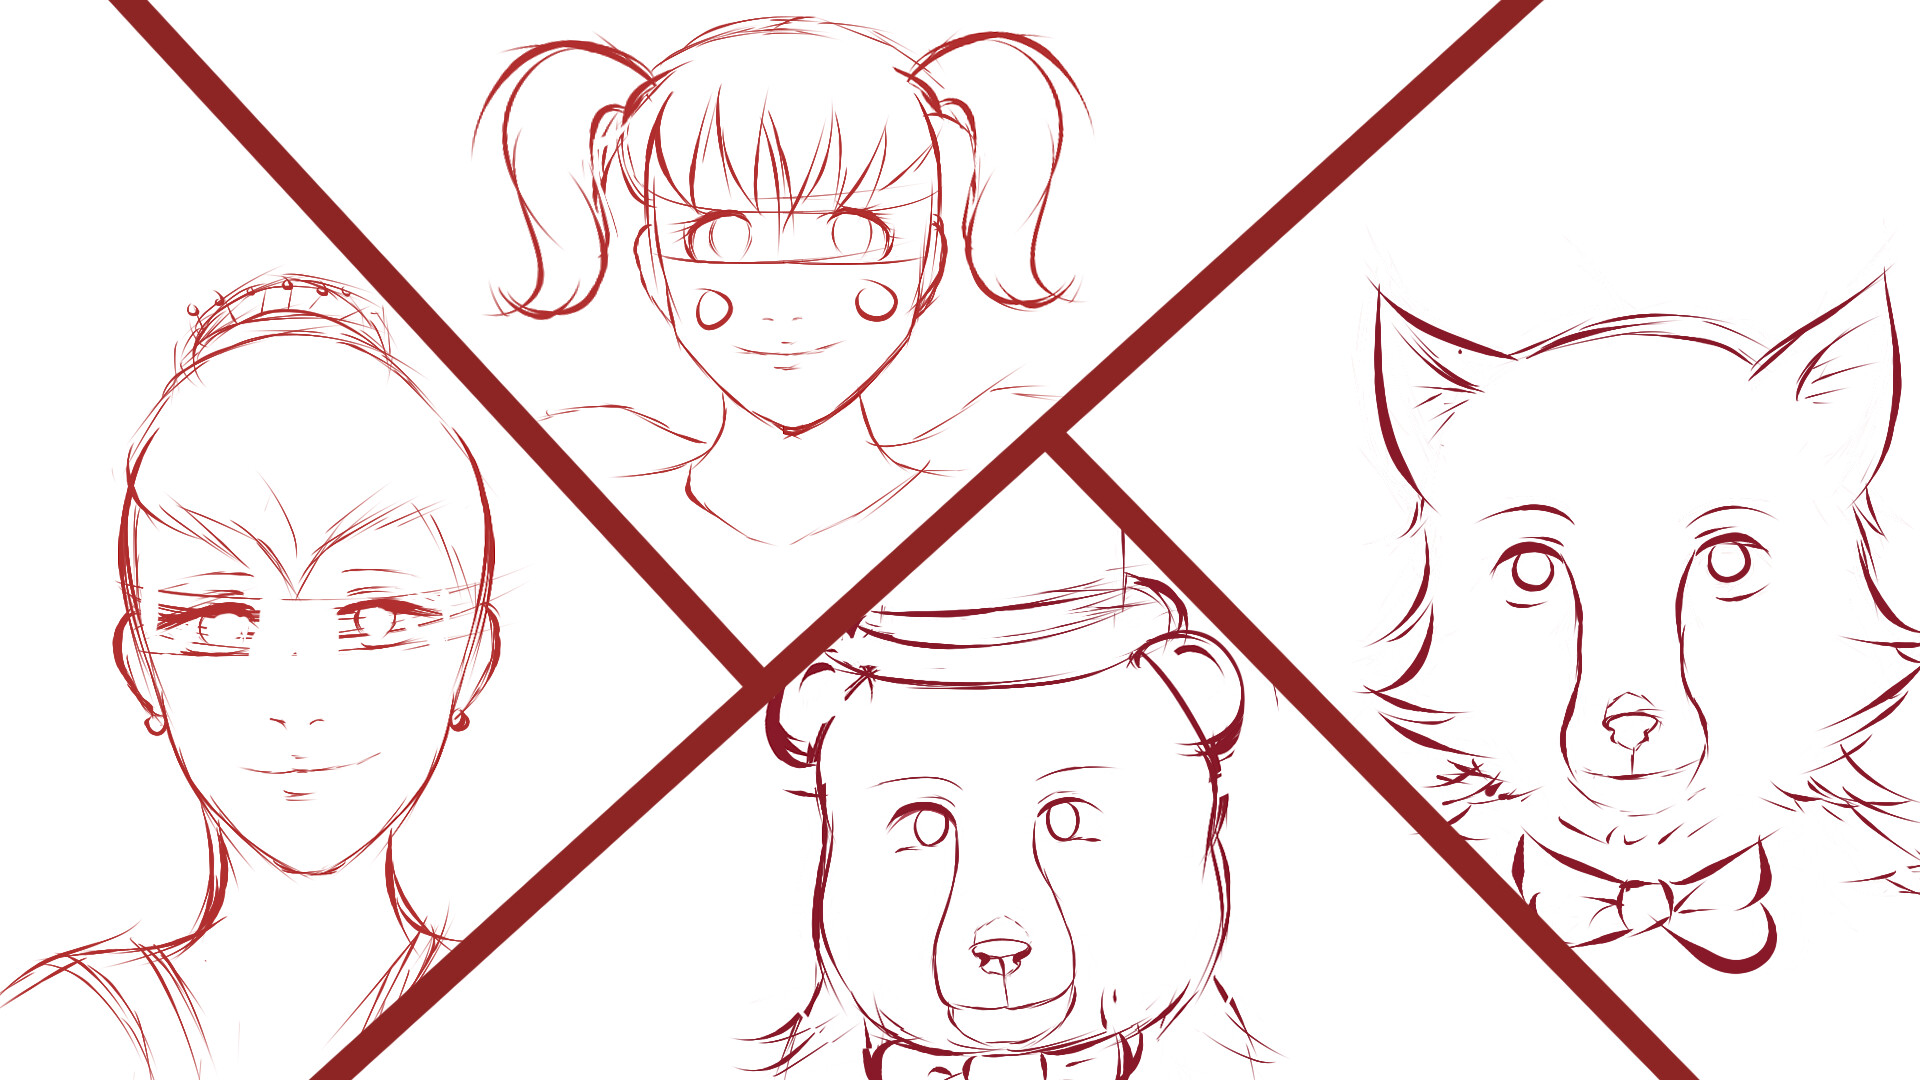 Drawing FNAF characters as cute anime girls Part 1 #fnaf #speedpaint